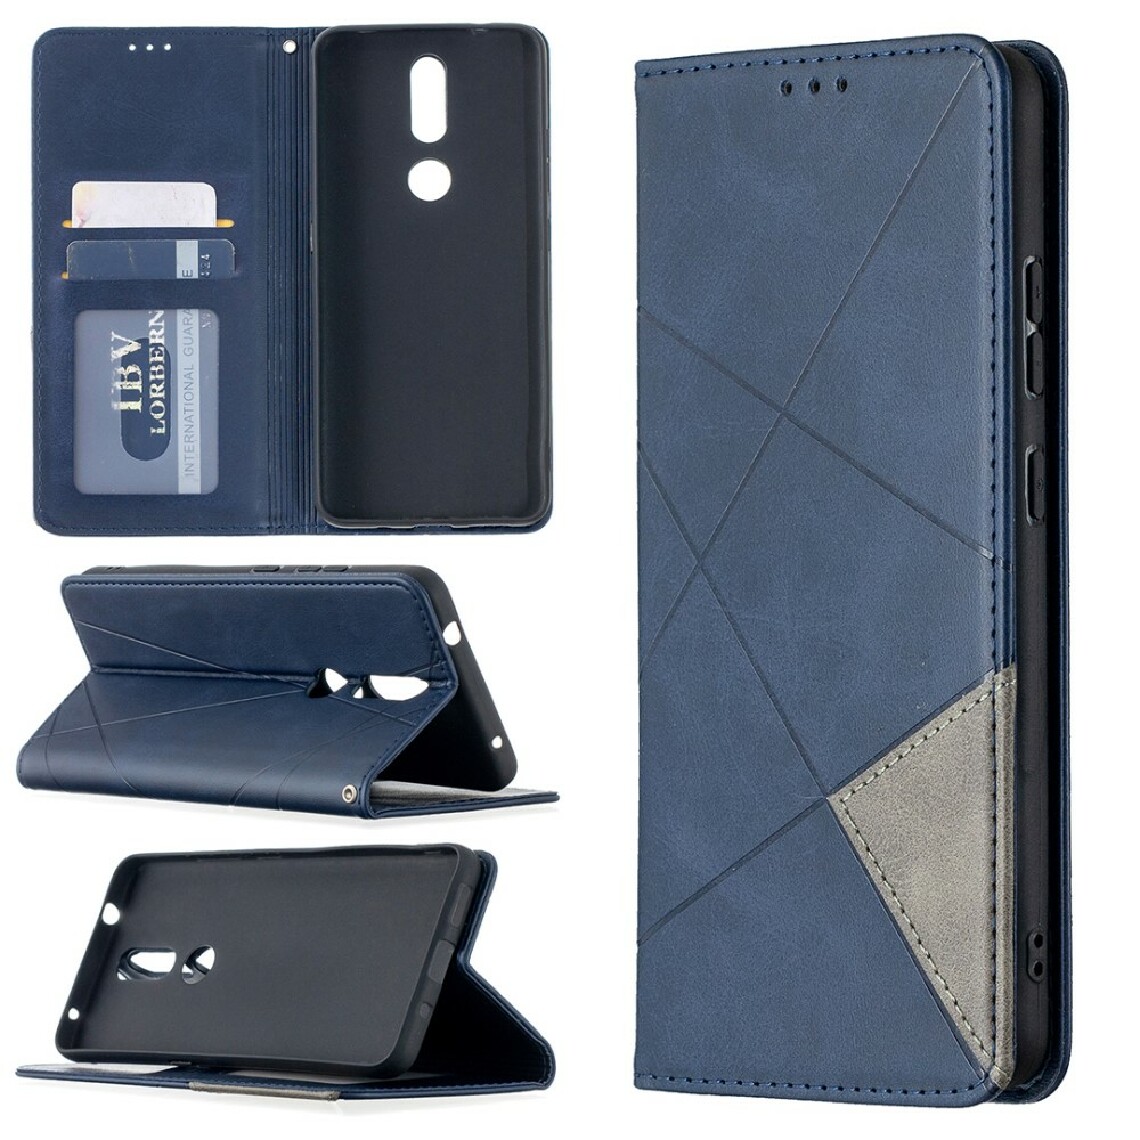 Other - Etui en PU motif géométrique avec support et porte-cartes bleu pour votre Nokia 2.4 - Coque, étui smartphone